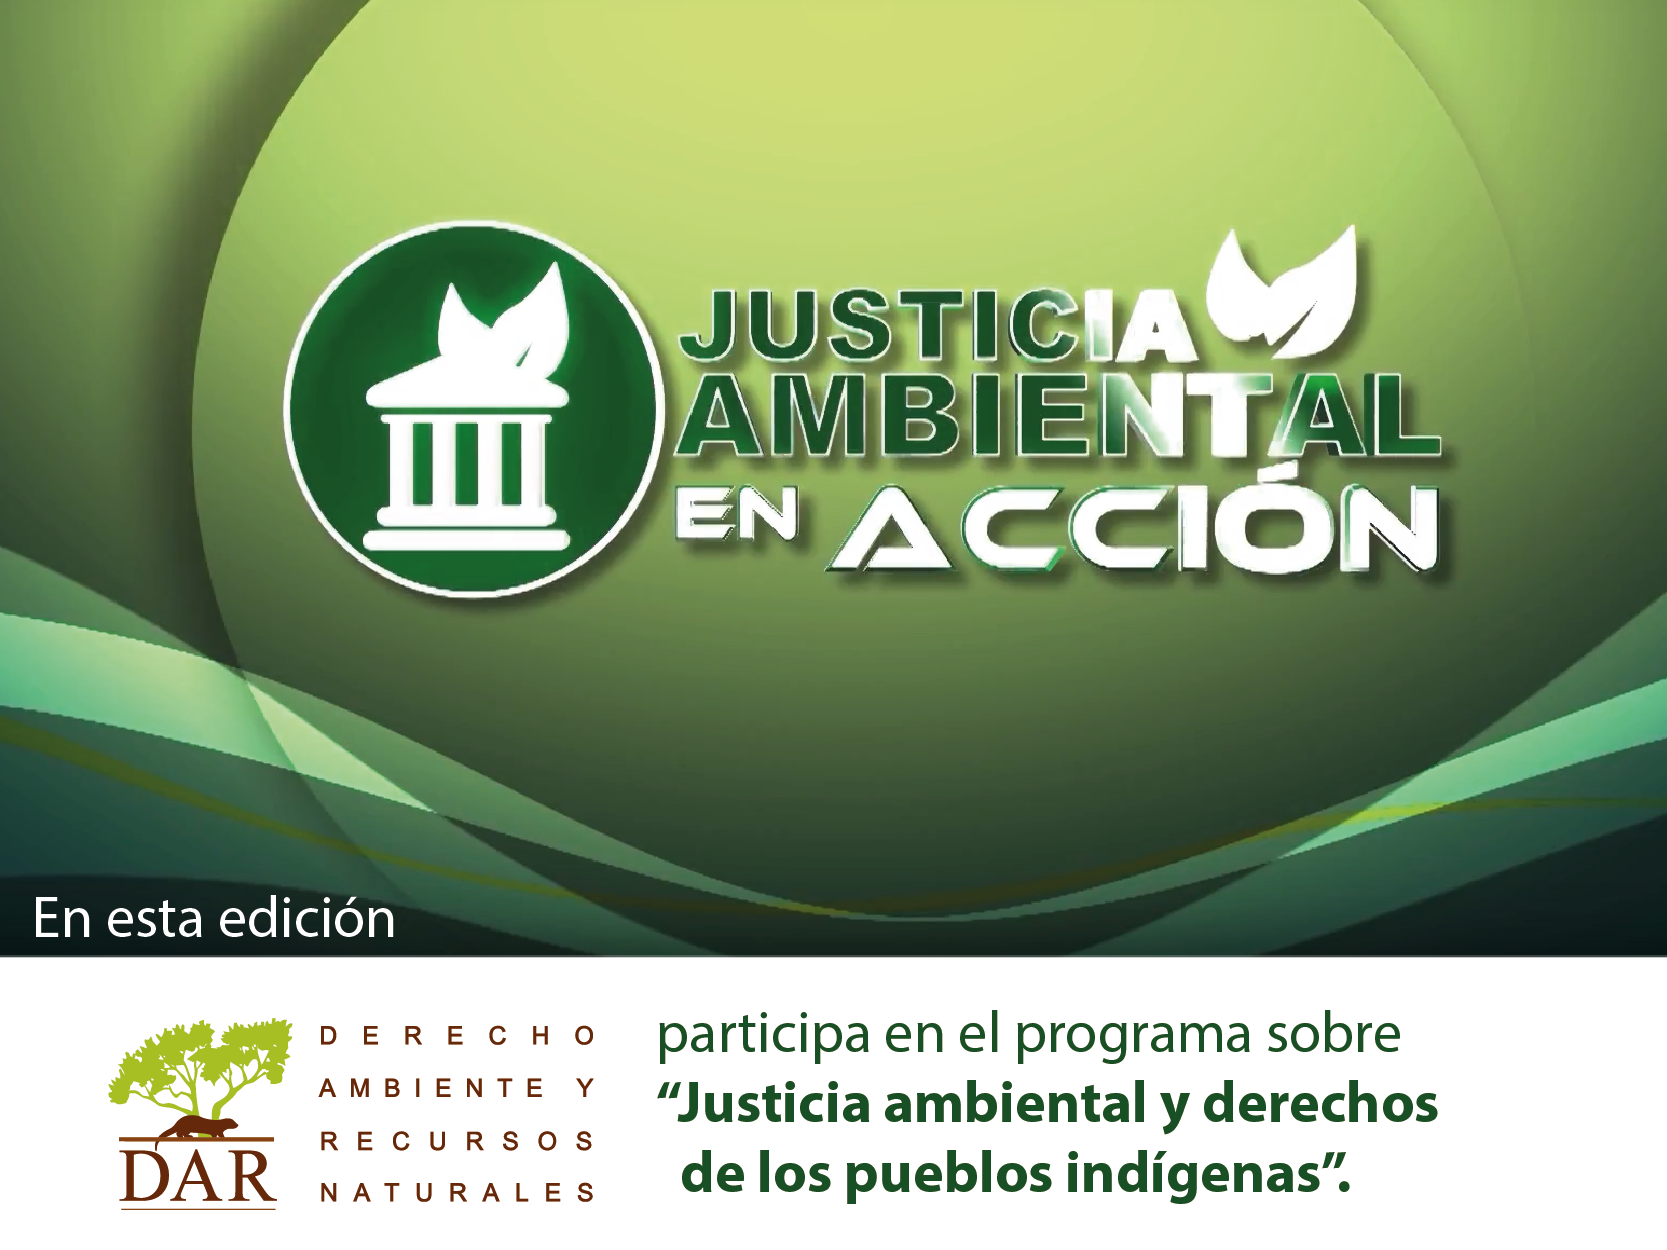 DAR en el programa “Justicia Ambiental en Acción”